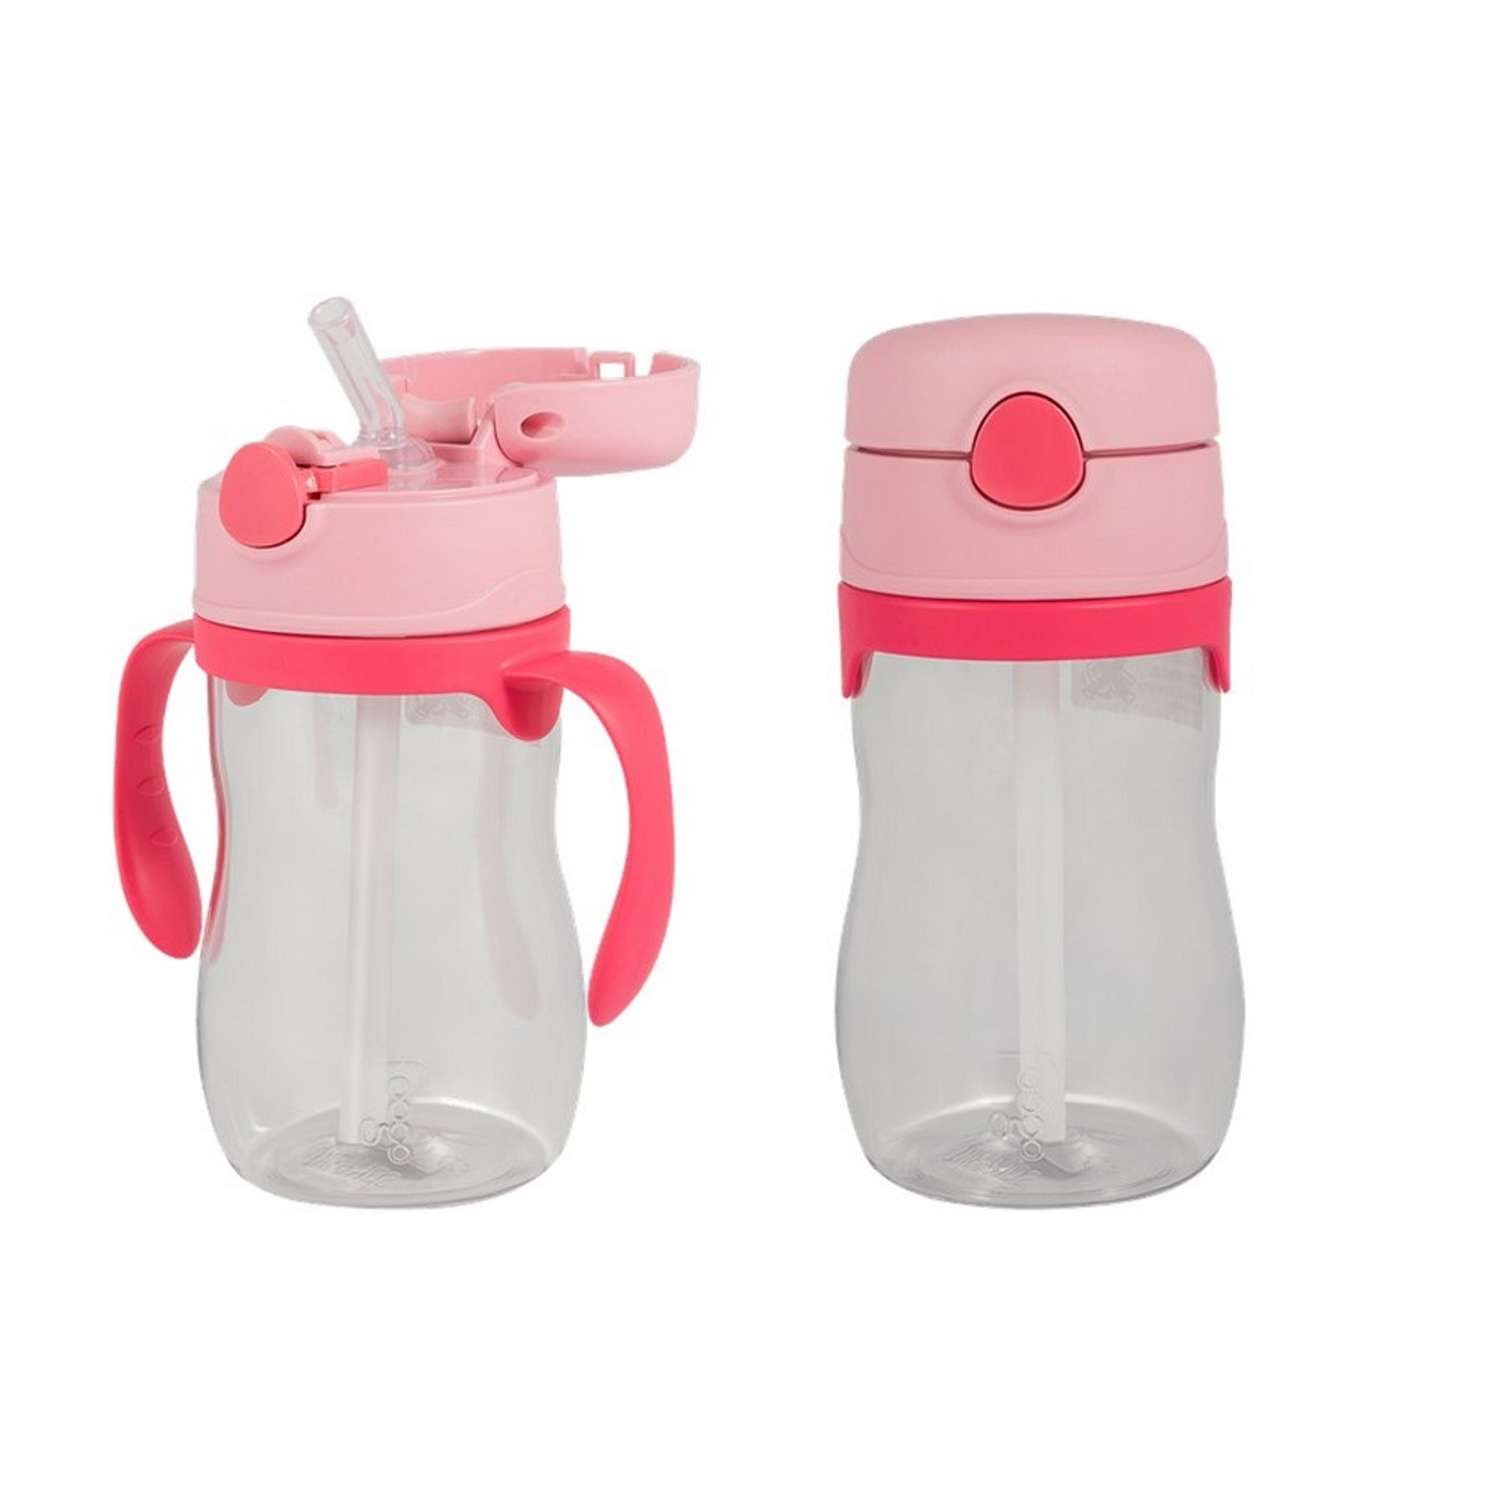 Детский термос и бутылка THERMOS 290 мл. +290 мл. розовый - фото 2